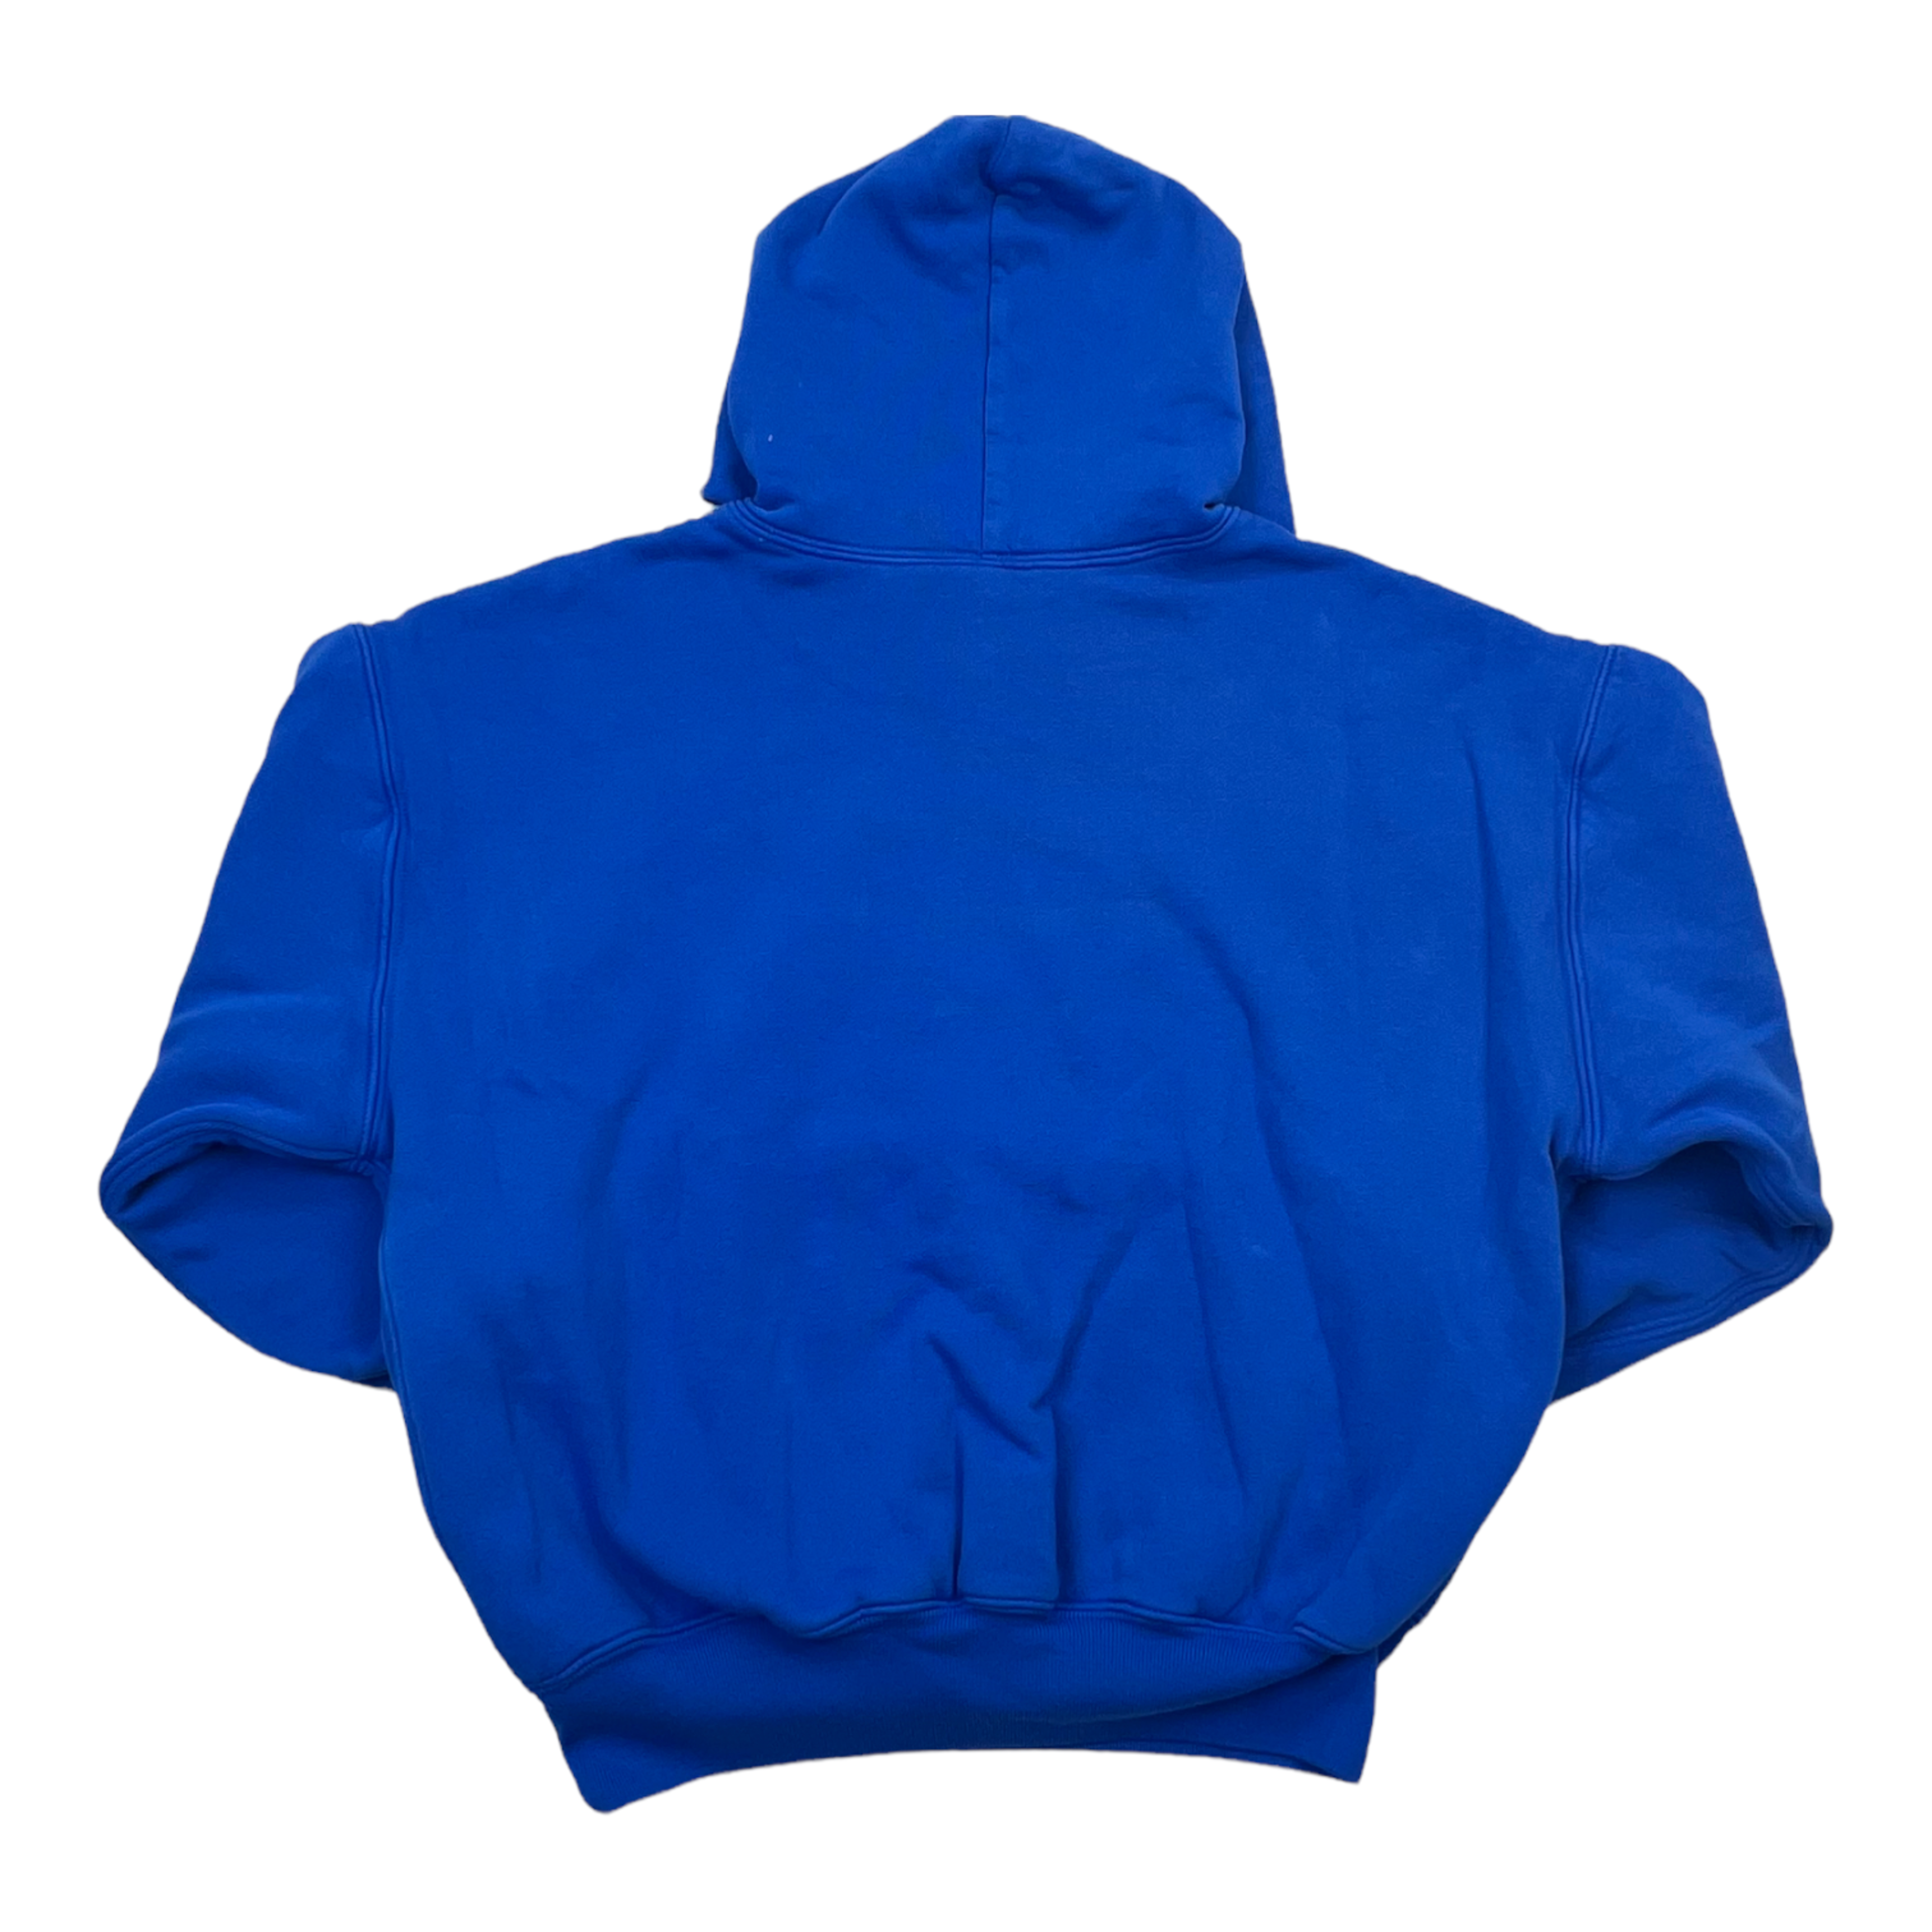 Alternate View 2 of Yeezy x Gap Hooded Sweatshirt Blue